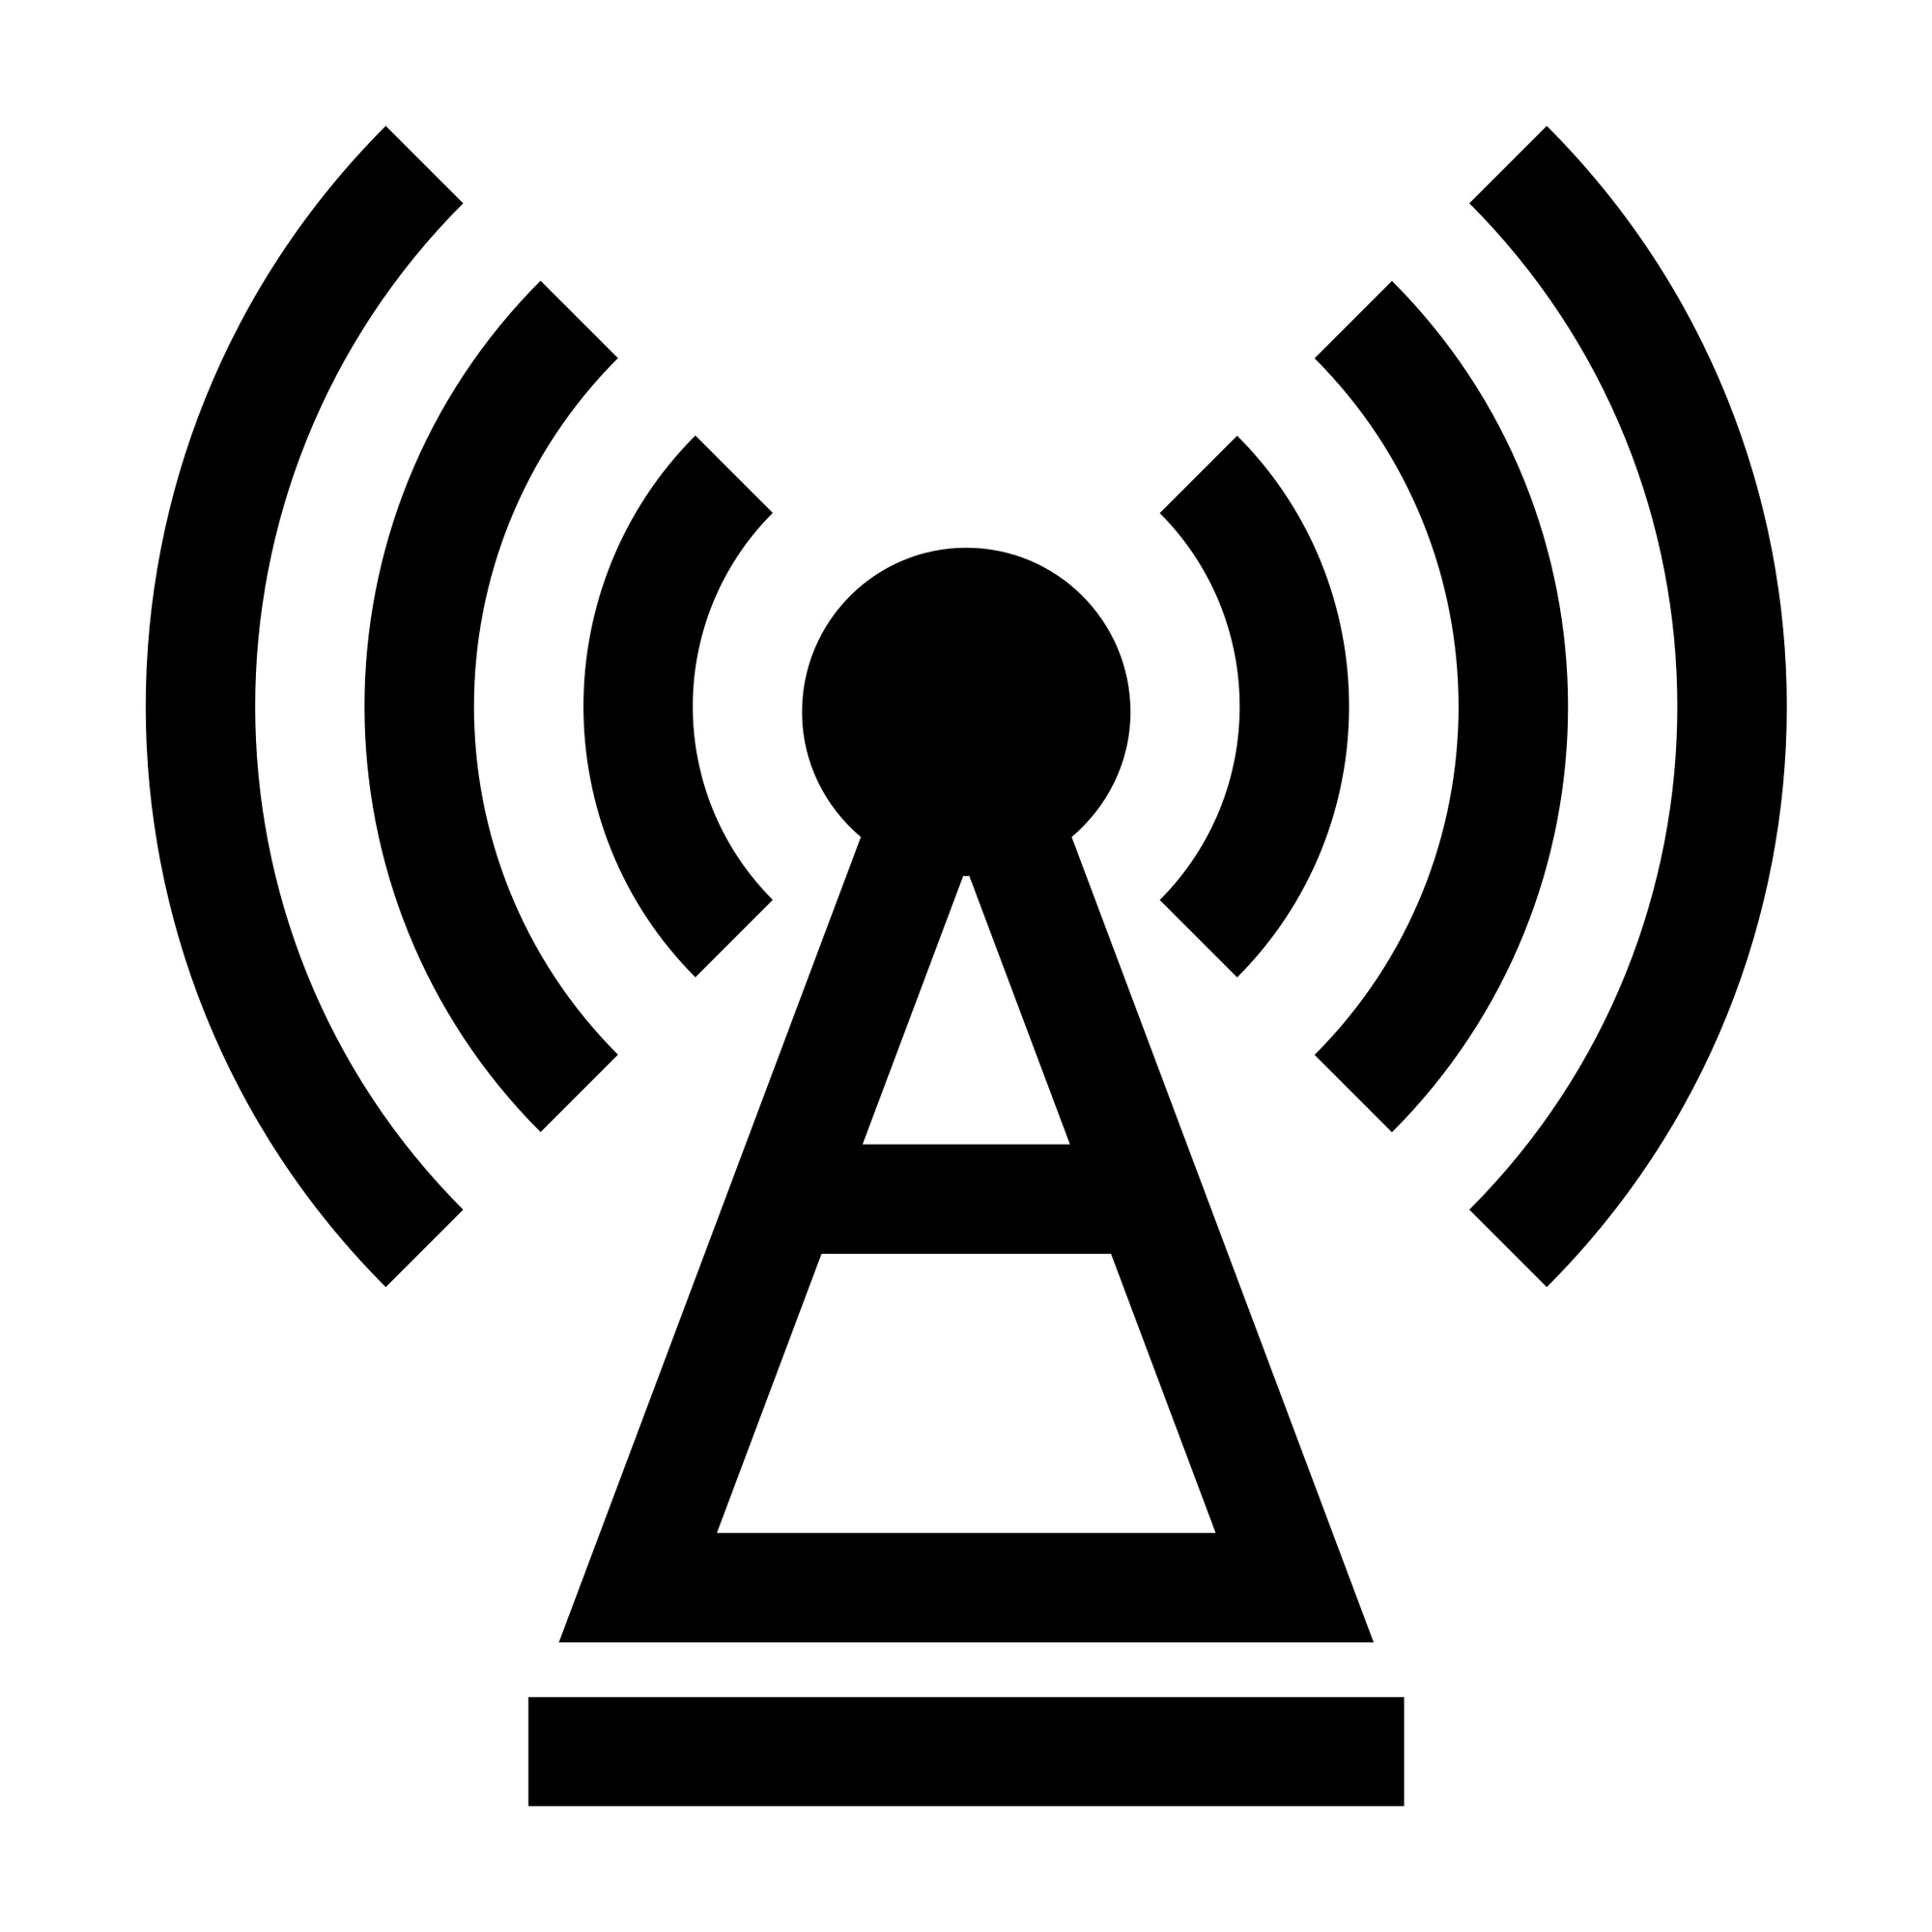 Пикающий сигнал. Радиосвязь пиктограмма. Значок радиосигнала. Радиоканал иконка. Символ связи.